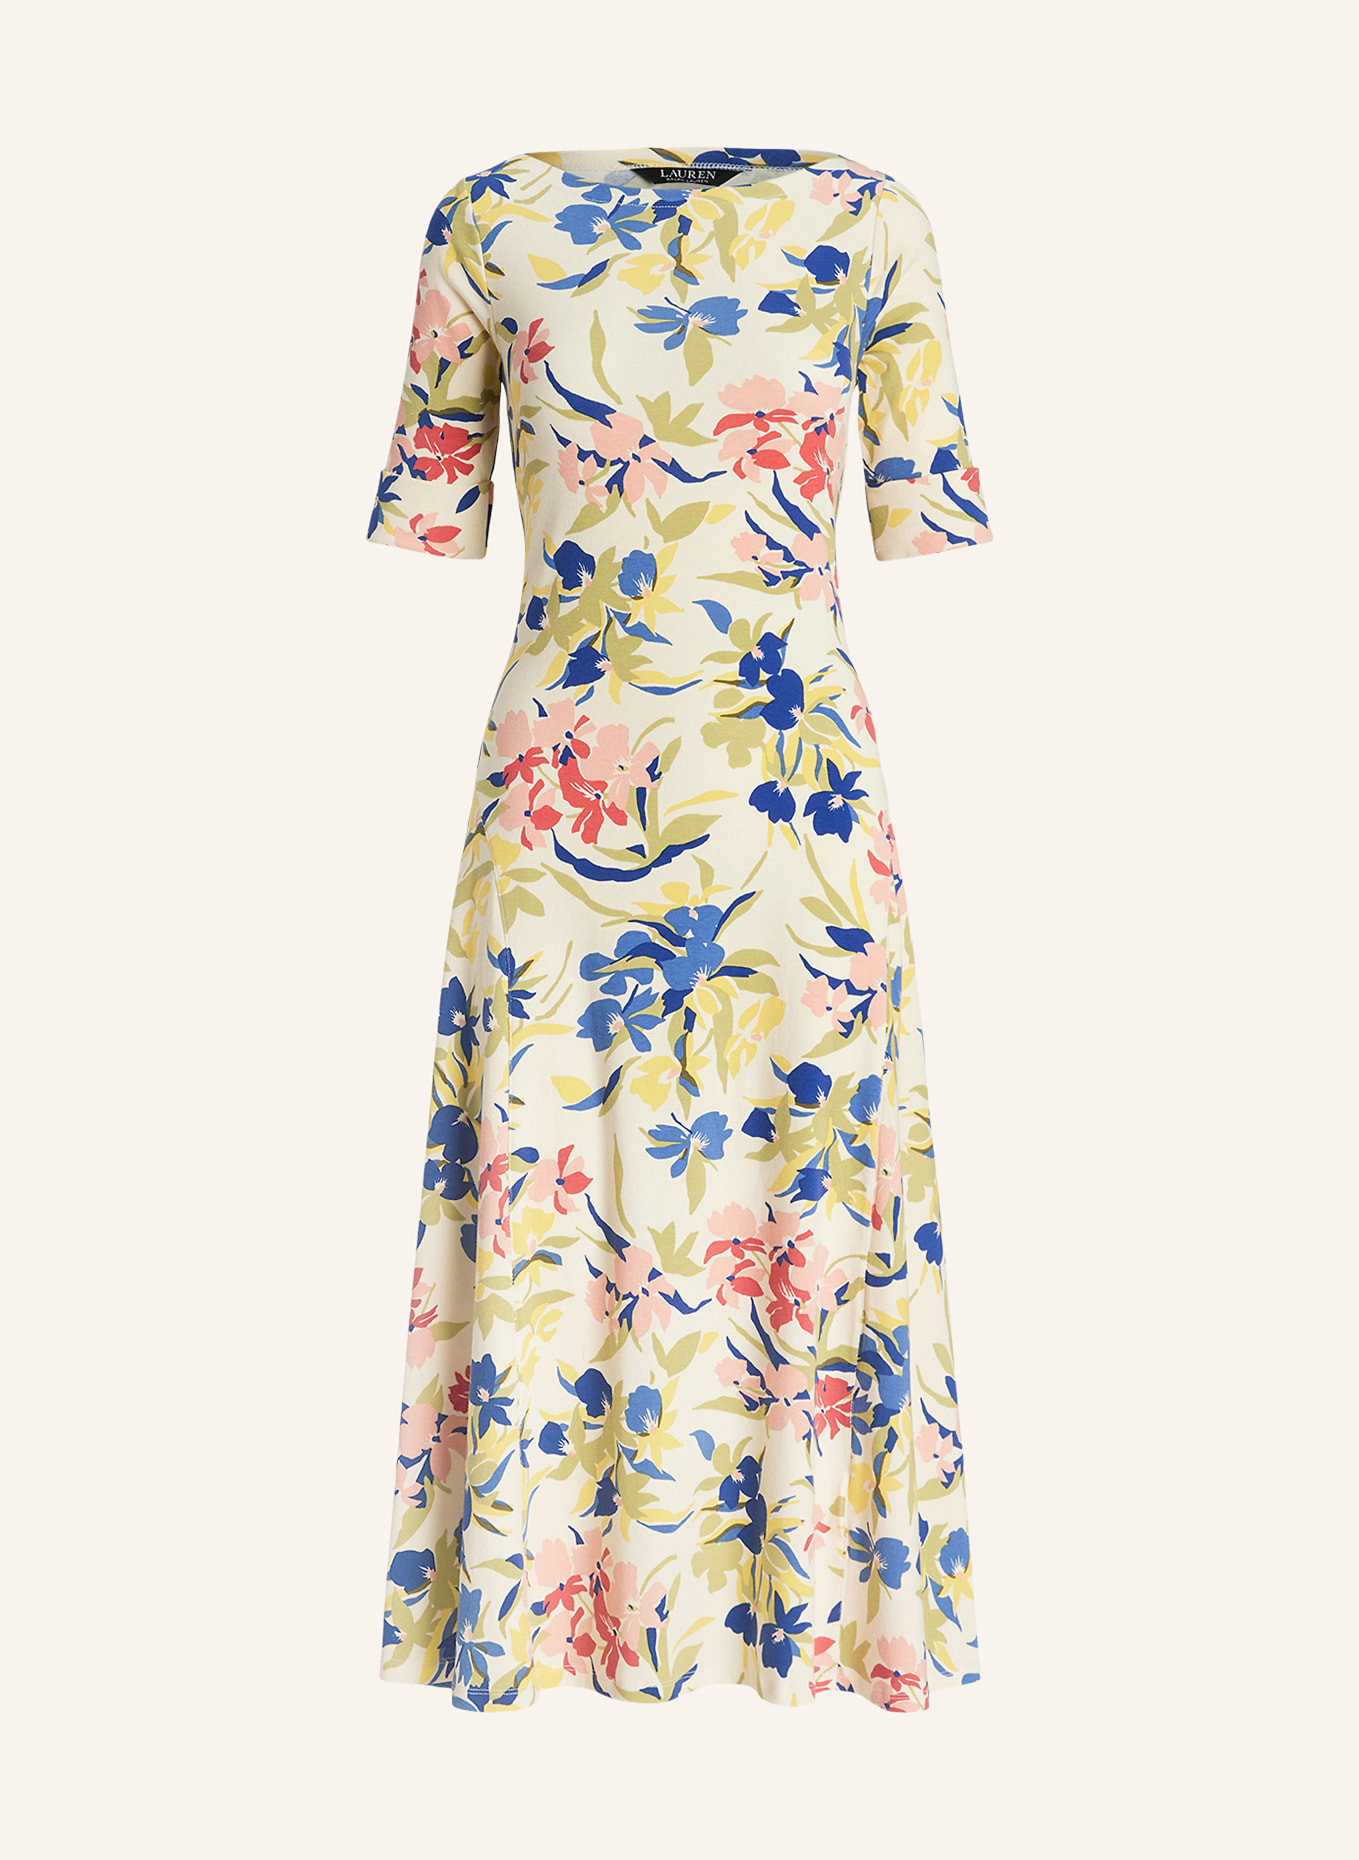 LAUREN RALPH LAUREN Kleid mit 3/4-Arm, Farbe: HELLGELB/ DUNKELBLAU/ HELLROT (Bild 1)